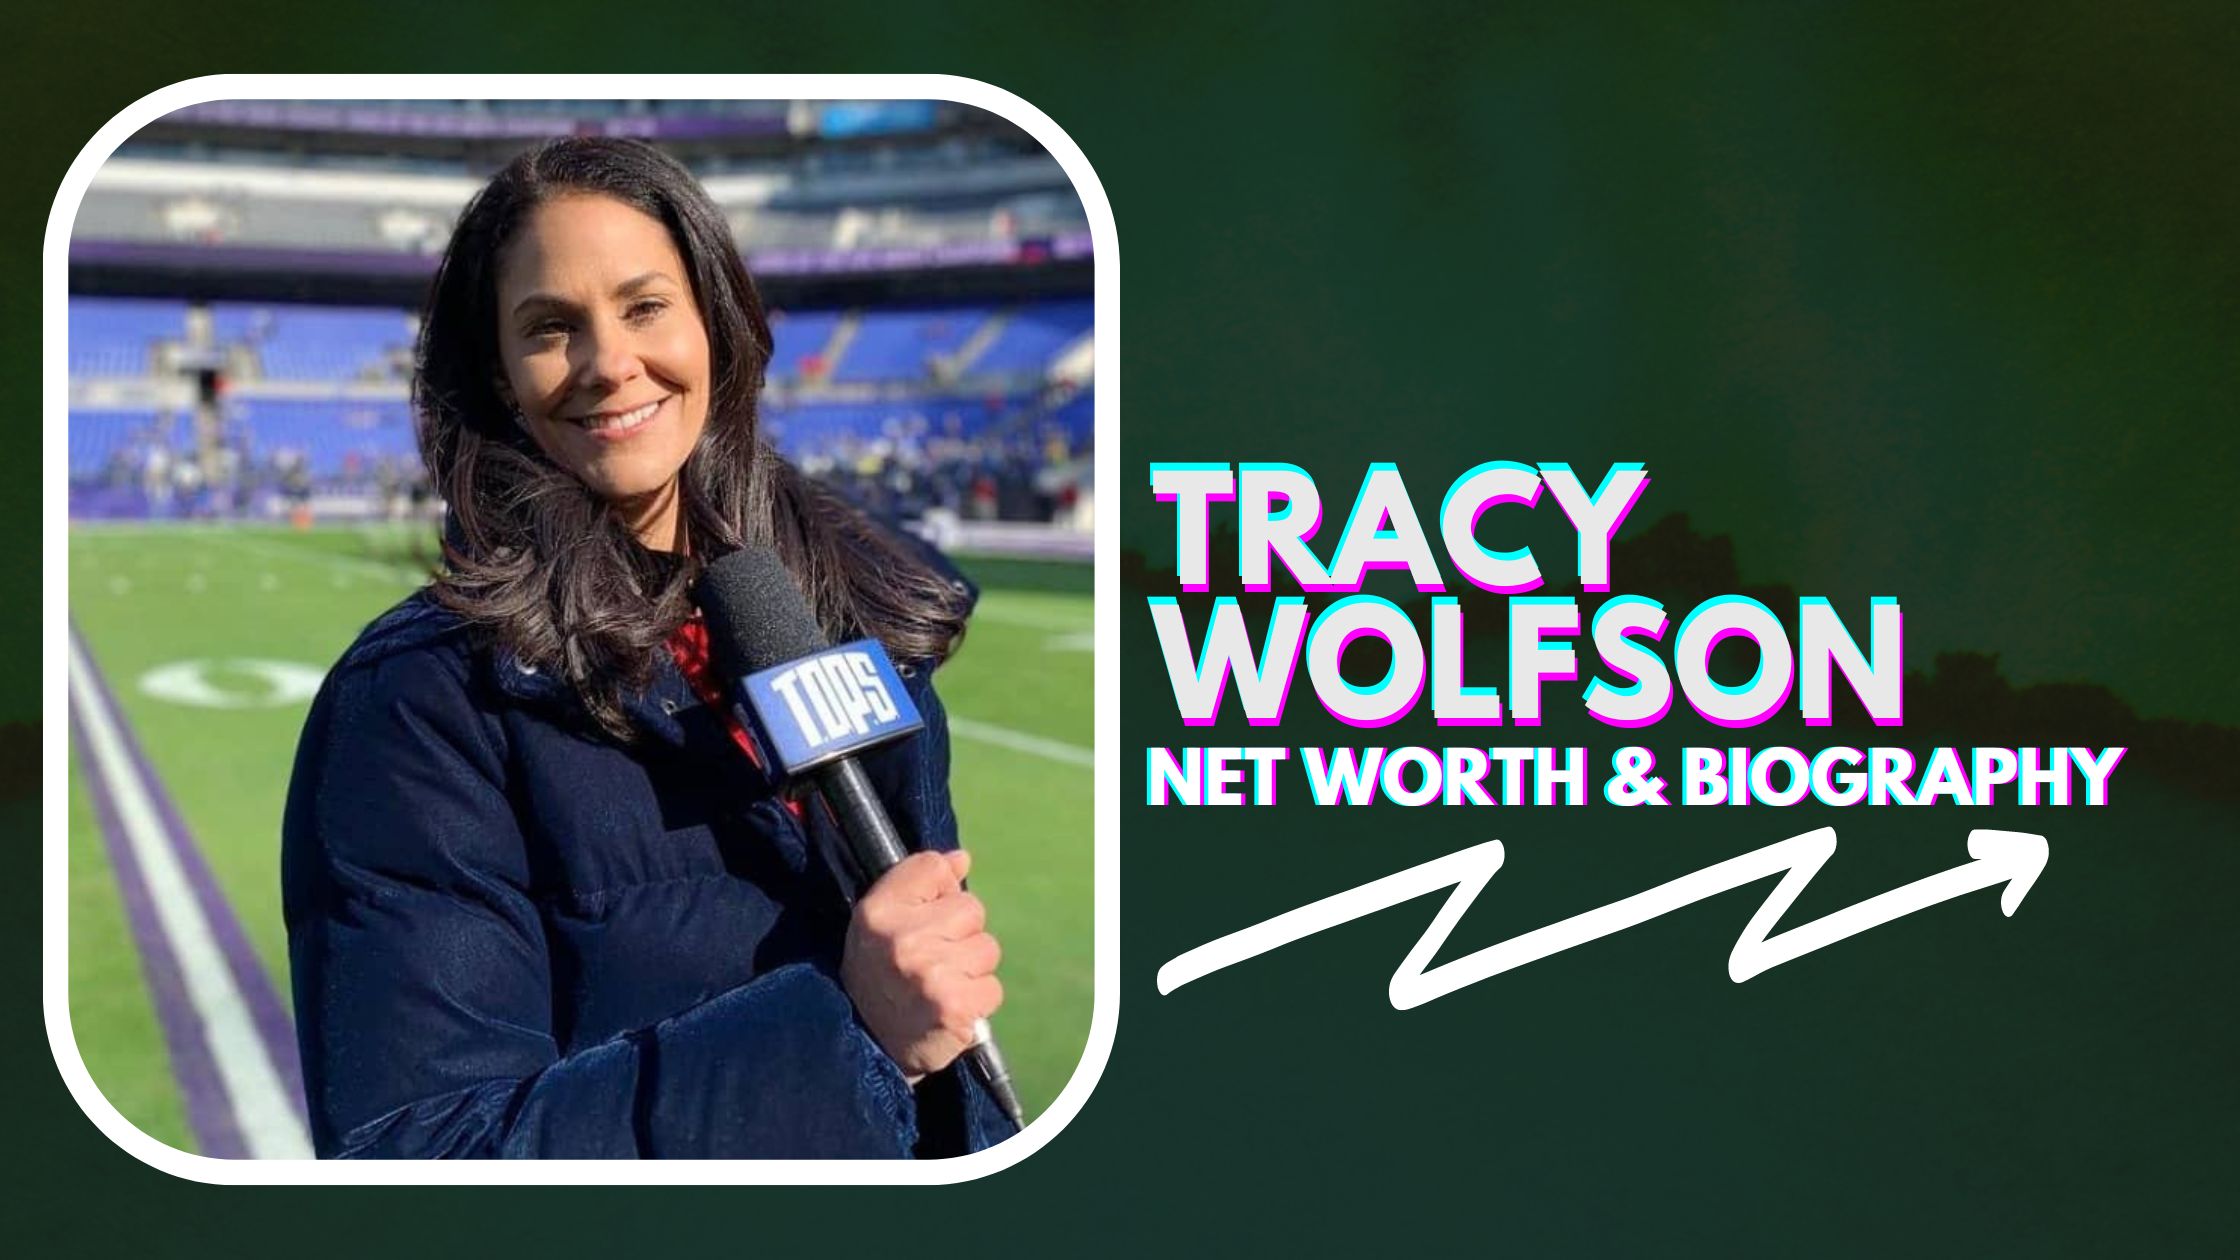 Tracy Wolfson